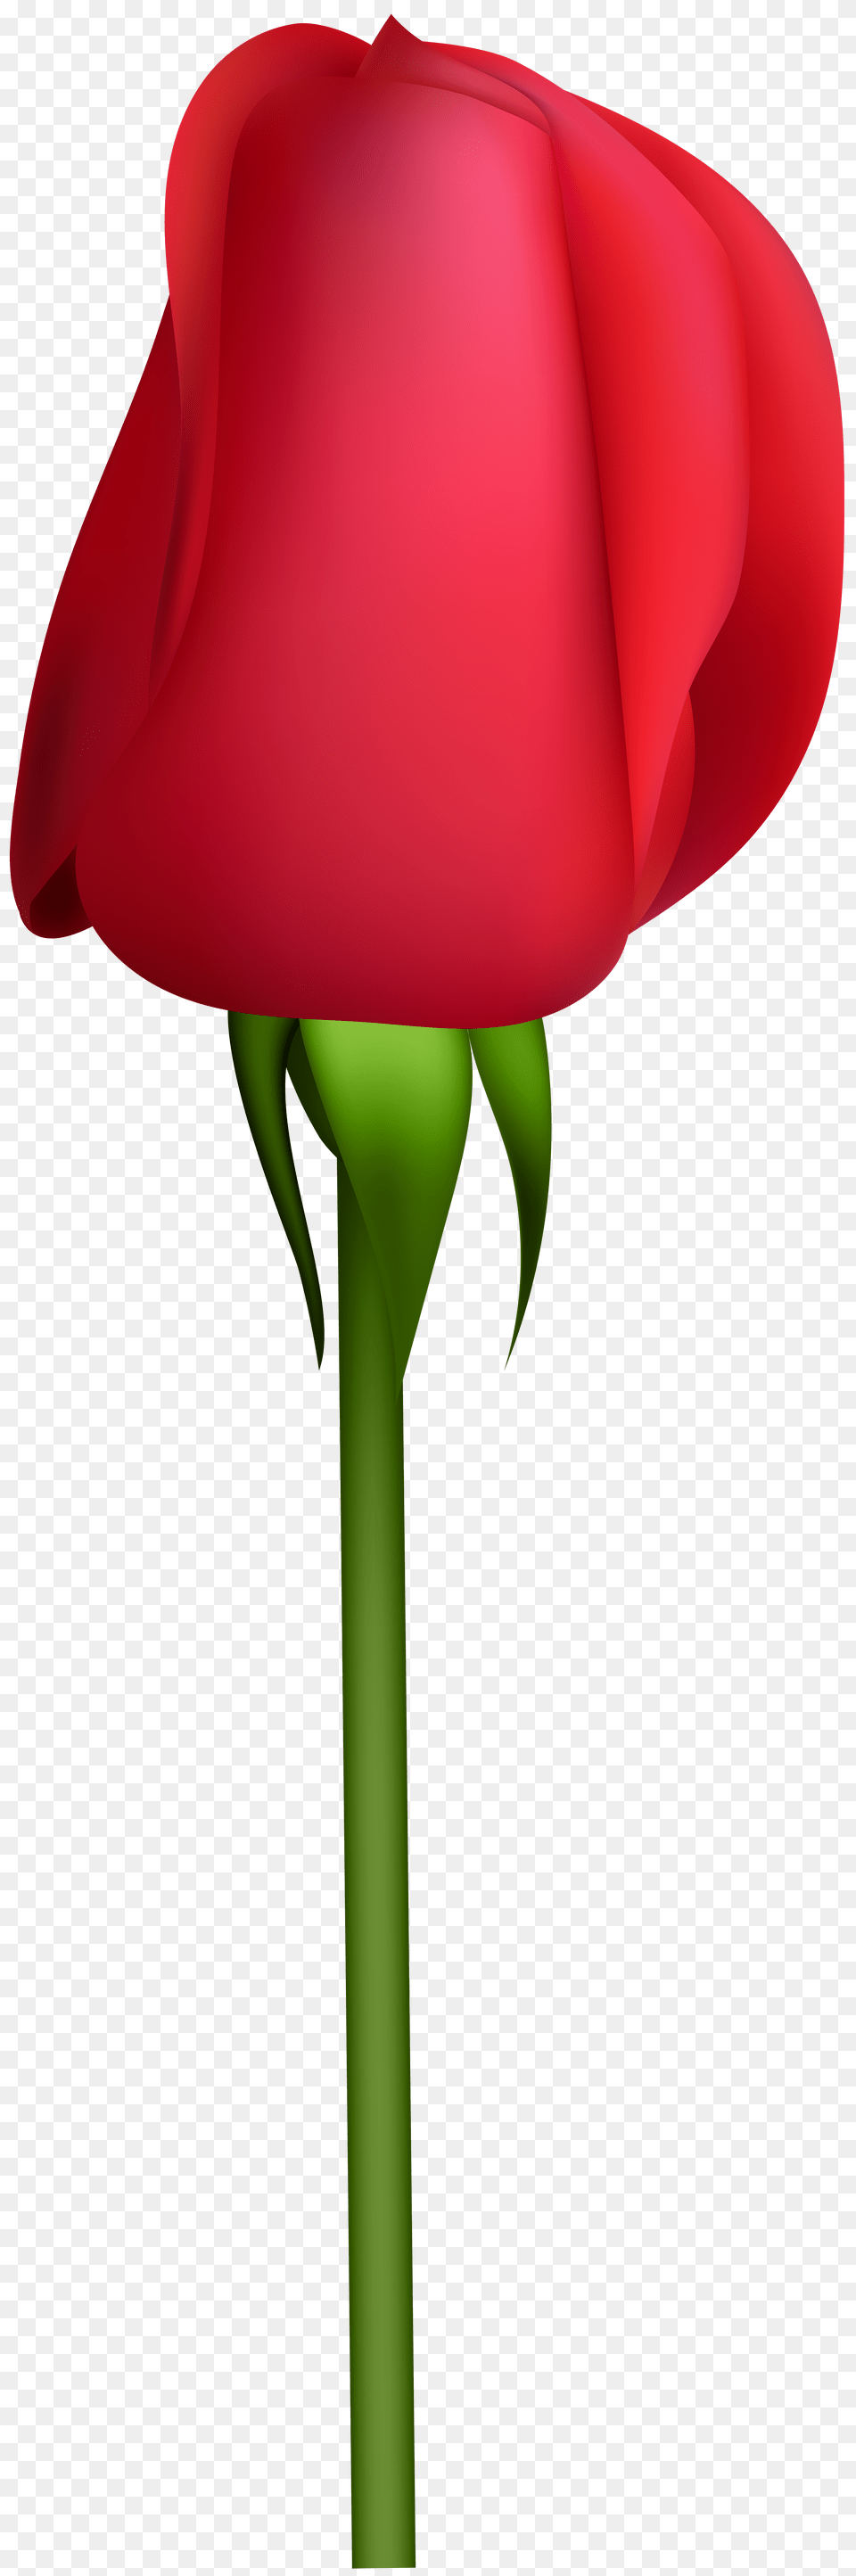 Rose Bud Transparent Clip, Flower, Petal, Plant, Adult Free Png